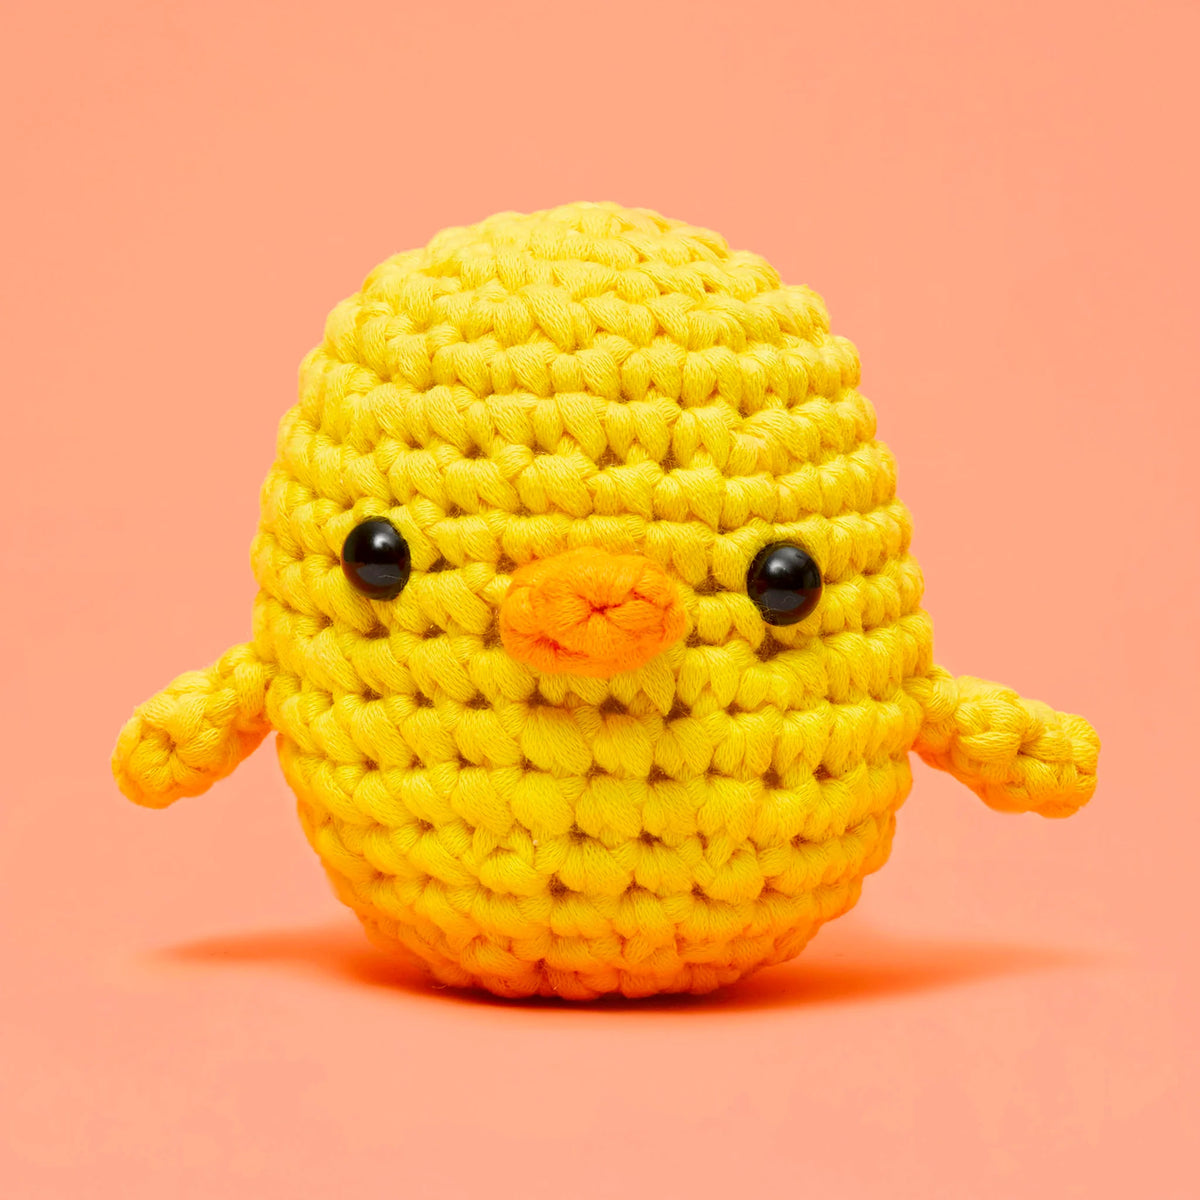 Kiki the Chick Beginner Crochet Kit Cover